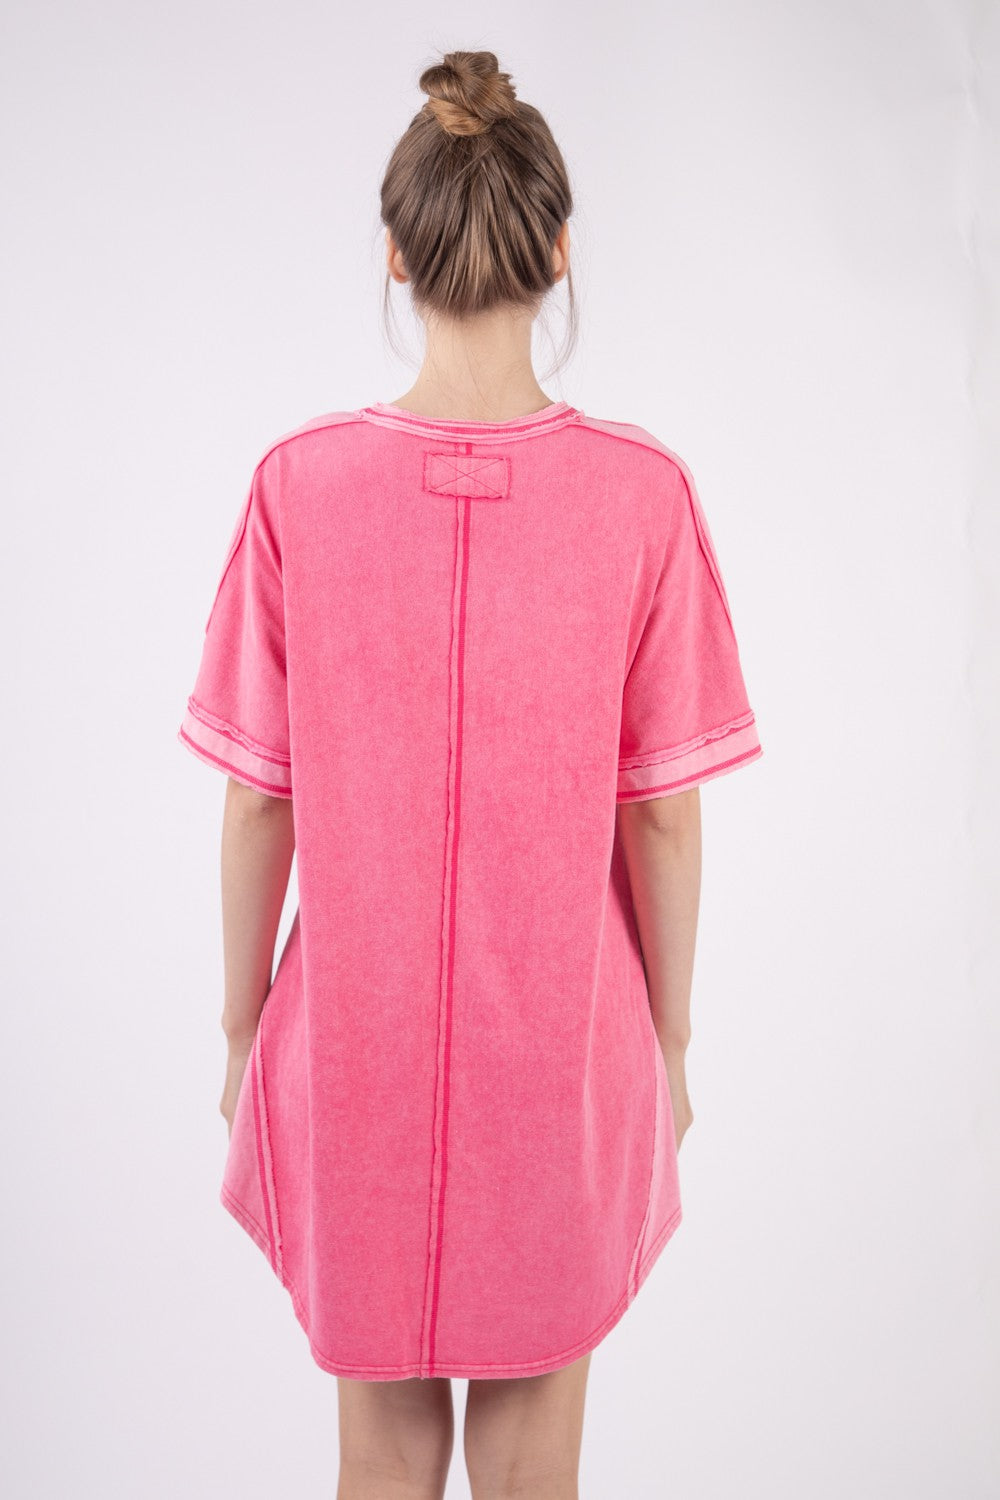 Kayla Hot Pink T-Shirt Dress